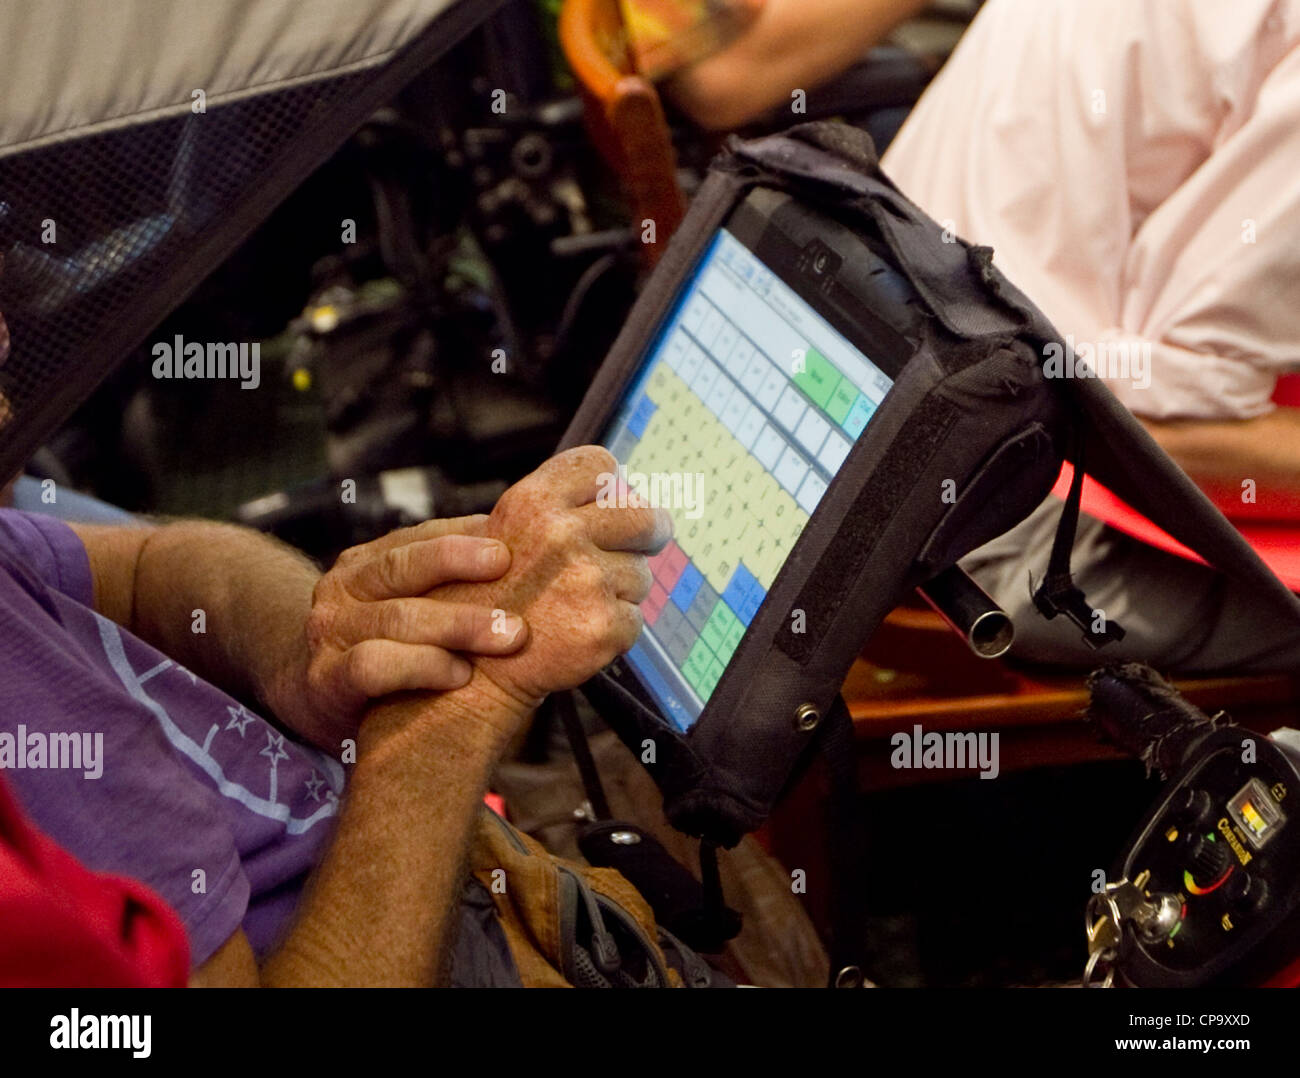 Discapacitados físicamente el hombre utiliza la pantalla táctil de ordenador acoplado a su silla de ruedas para comunicarse Foto de stock